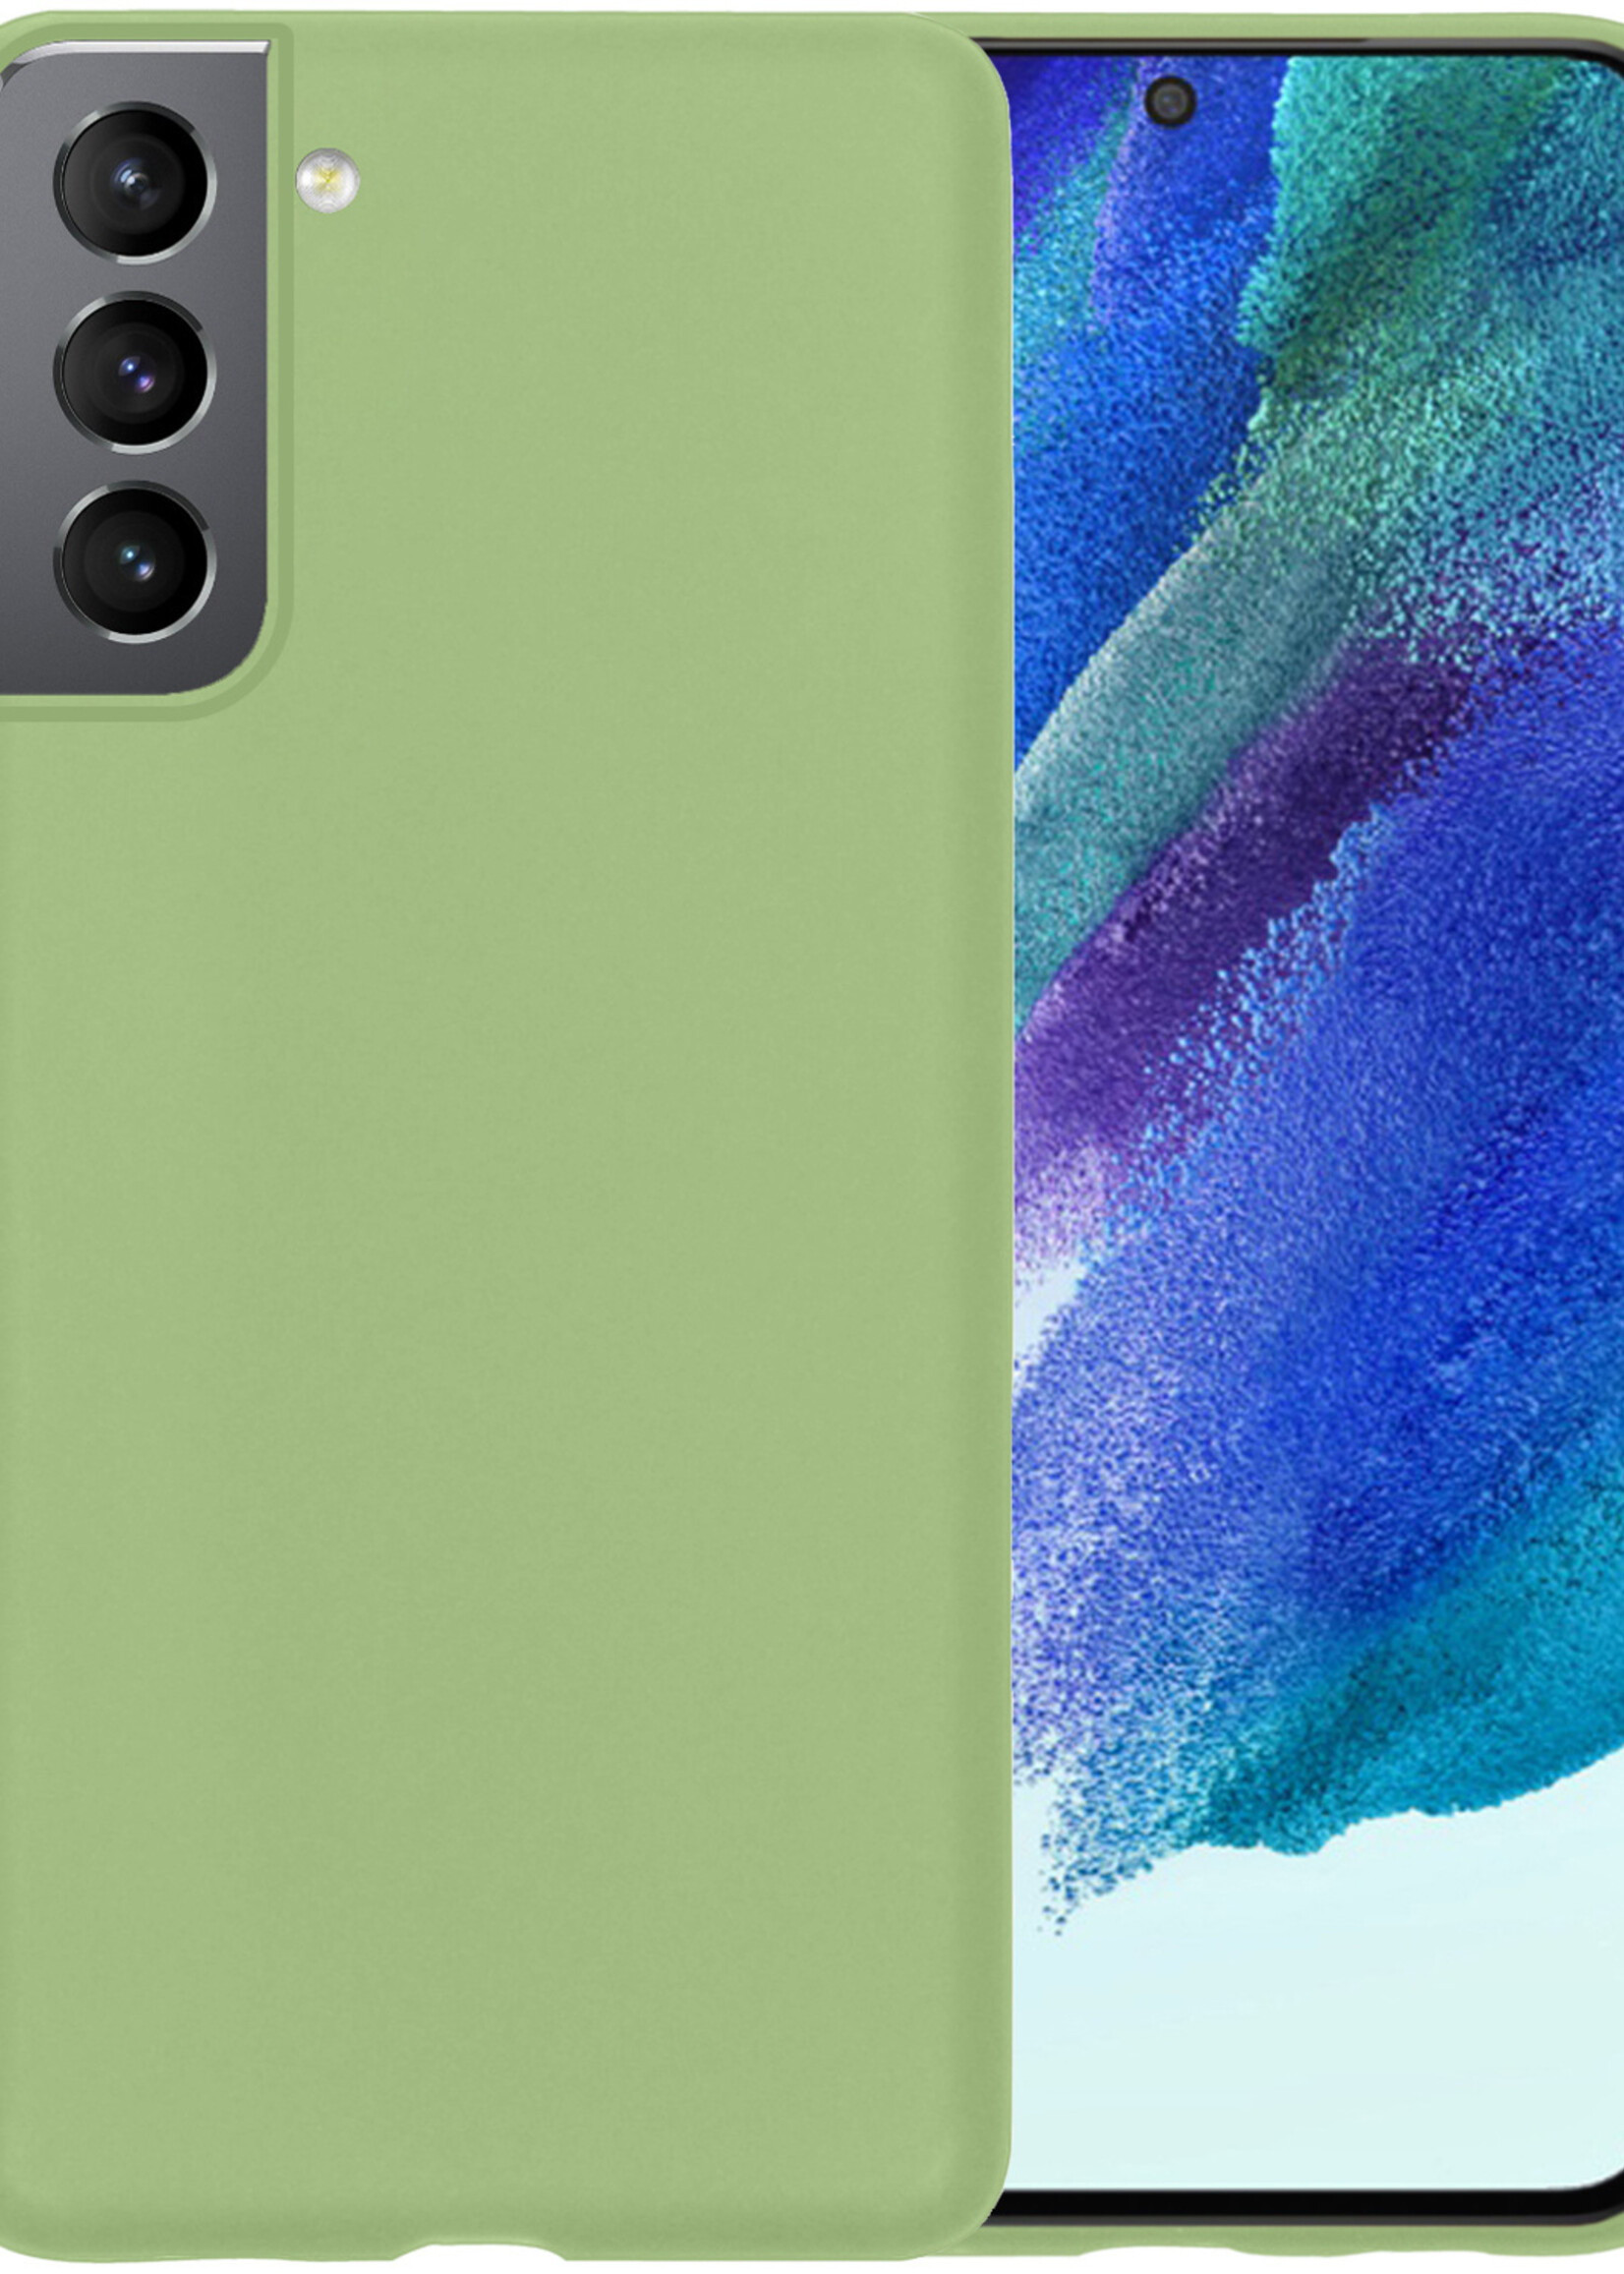 BTH Samsung Galaxy S21 FE Hoesje Siliconen Case Cover - Samsung S21 FE Hoesje Cover Hoes Siliconen - Groen